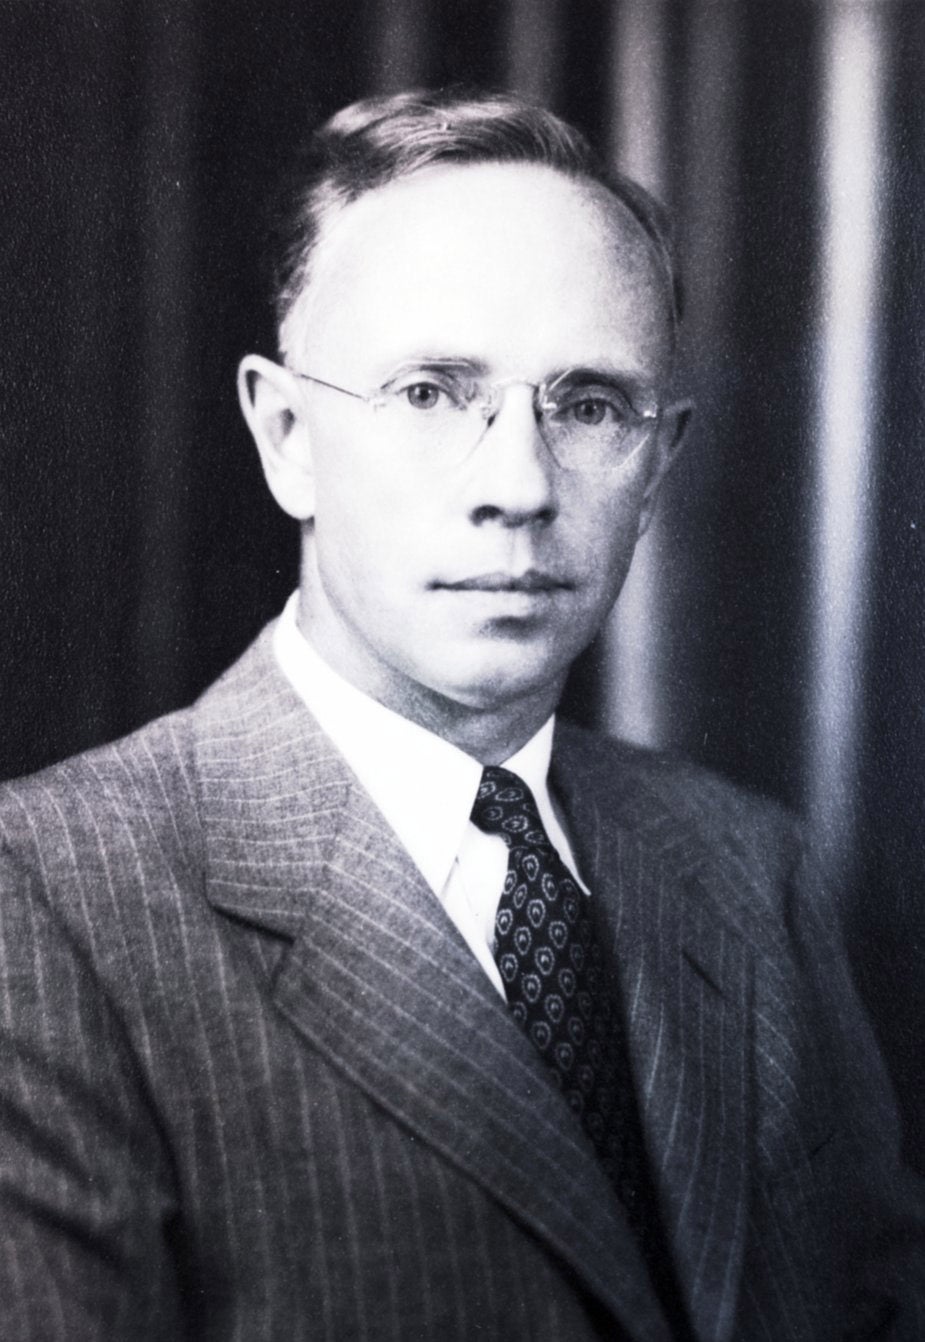 Melvin C. Molstad, 1948